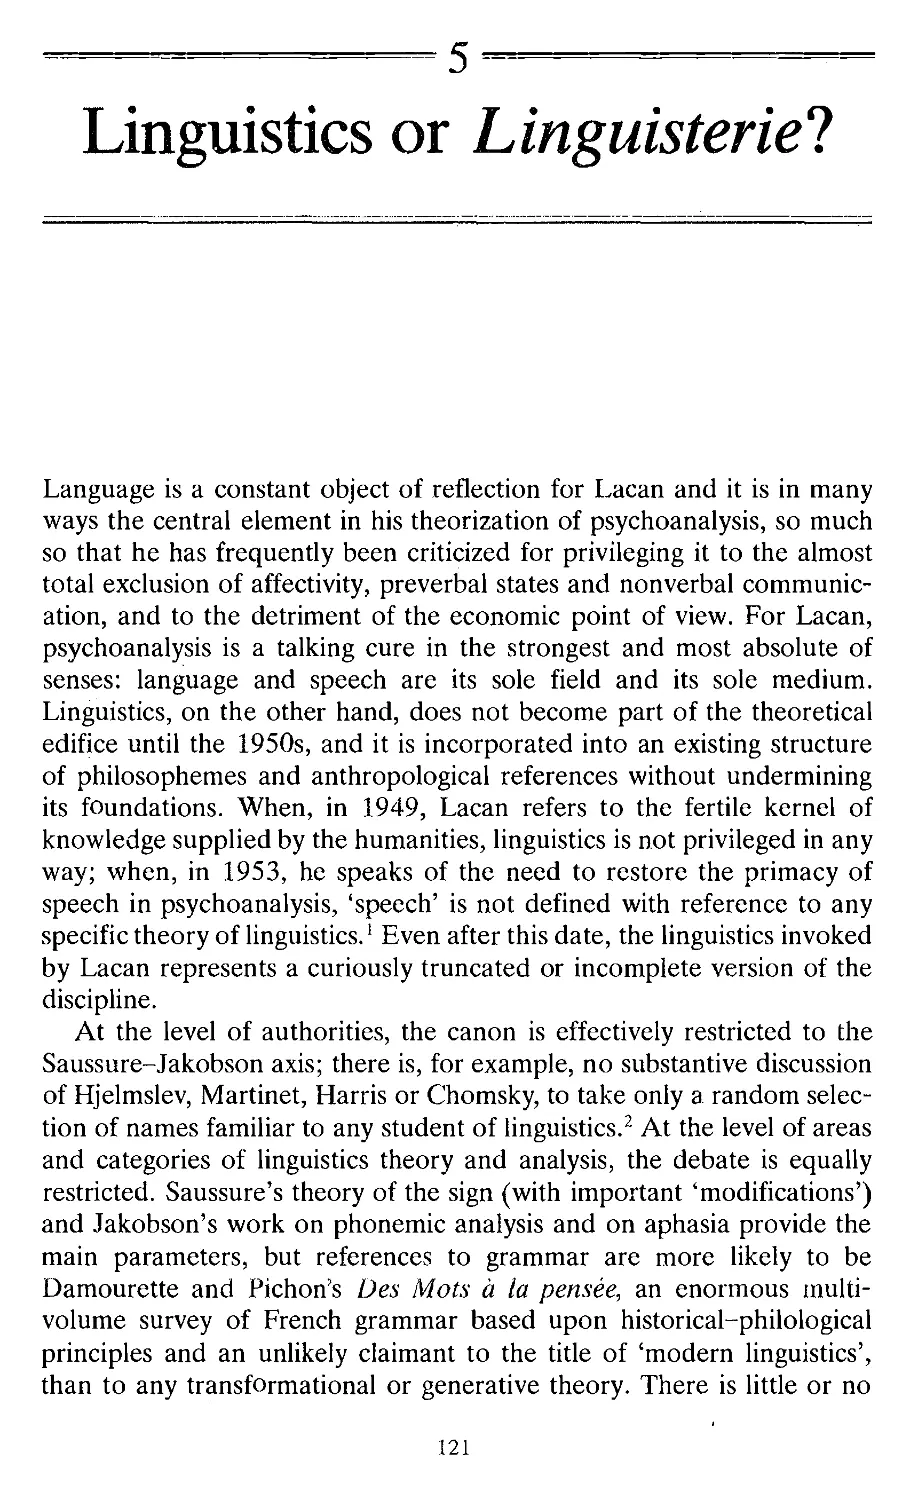 Linguistics or Linguisterie